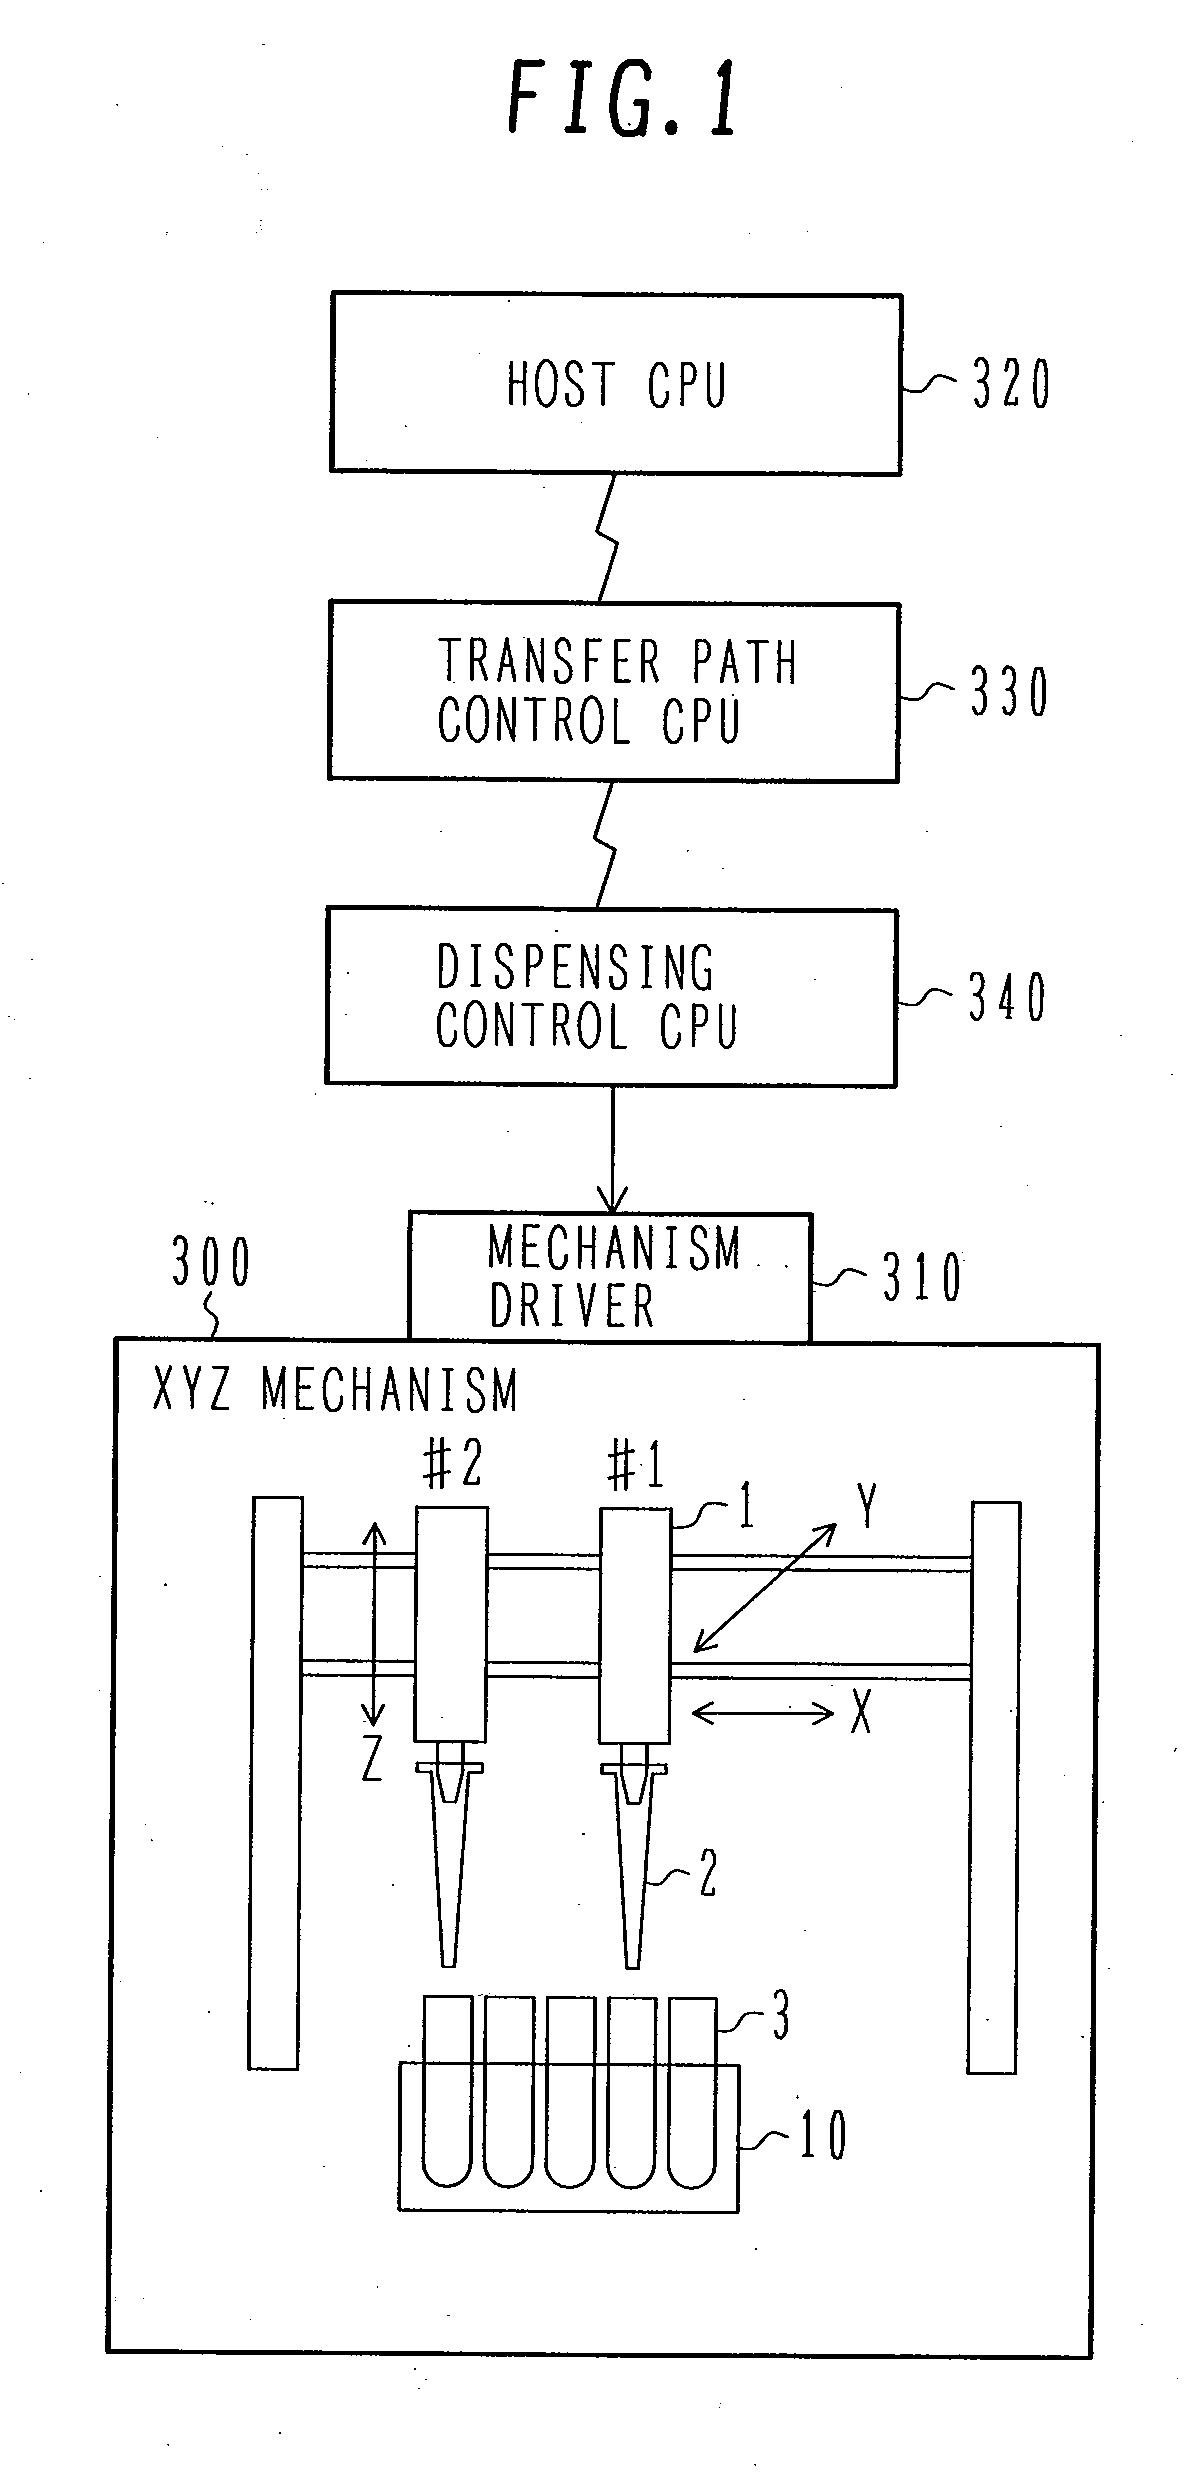 Sample dispensing apparatus